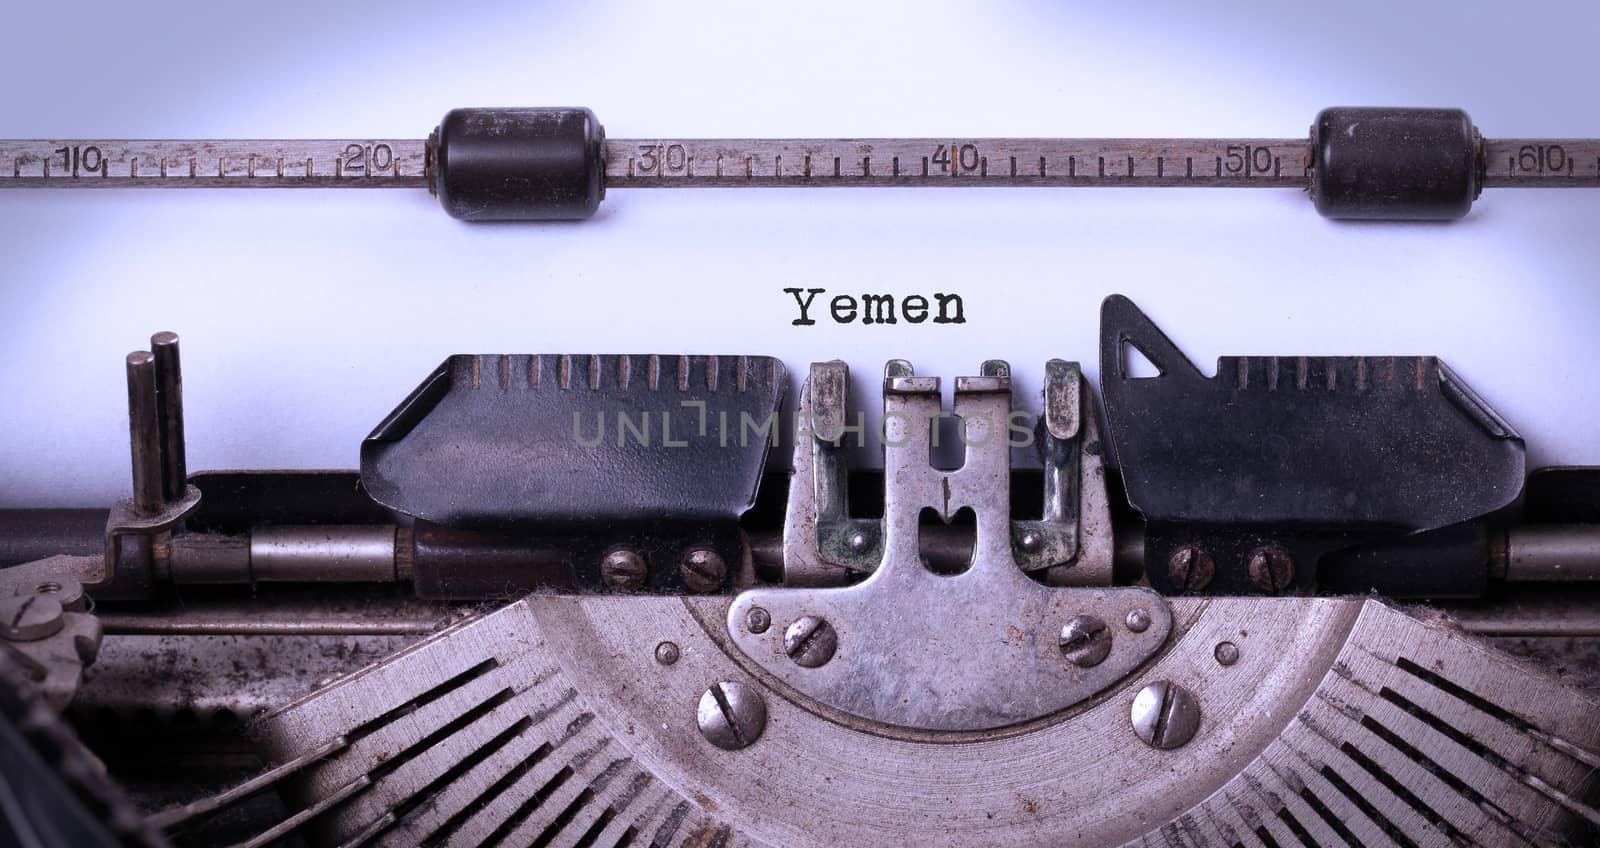 Old typewriter - Yemen by michaklootwijk